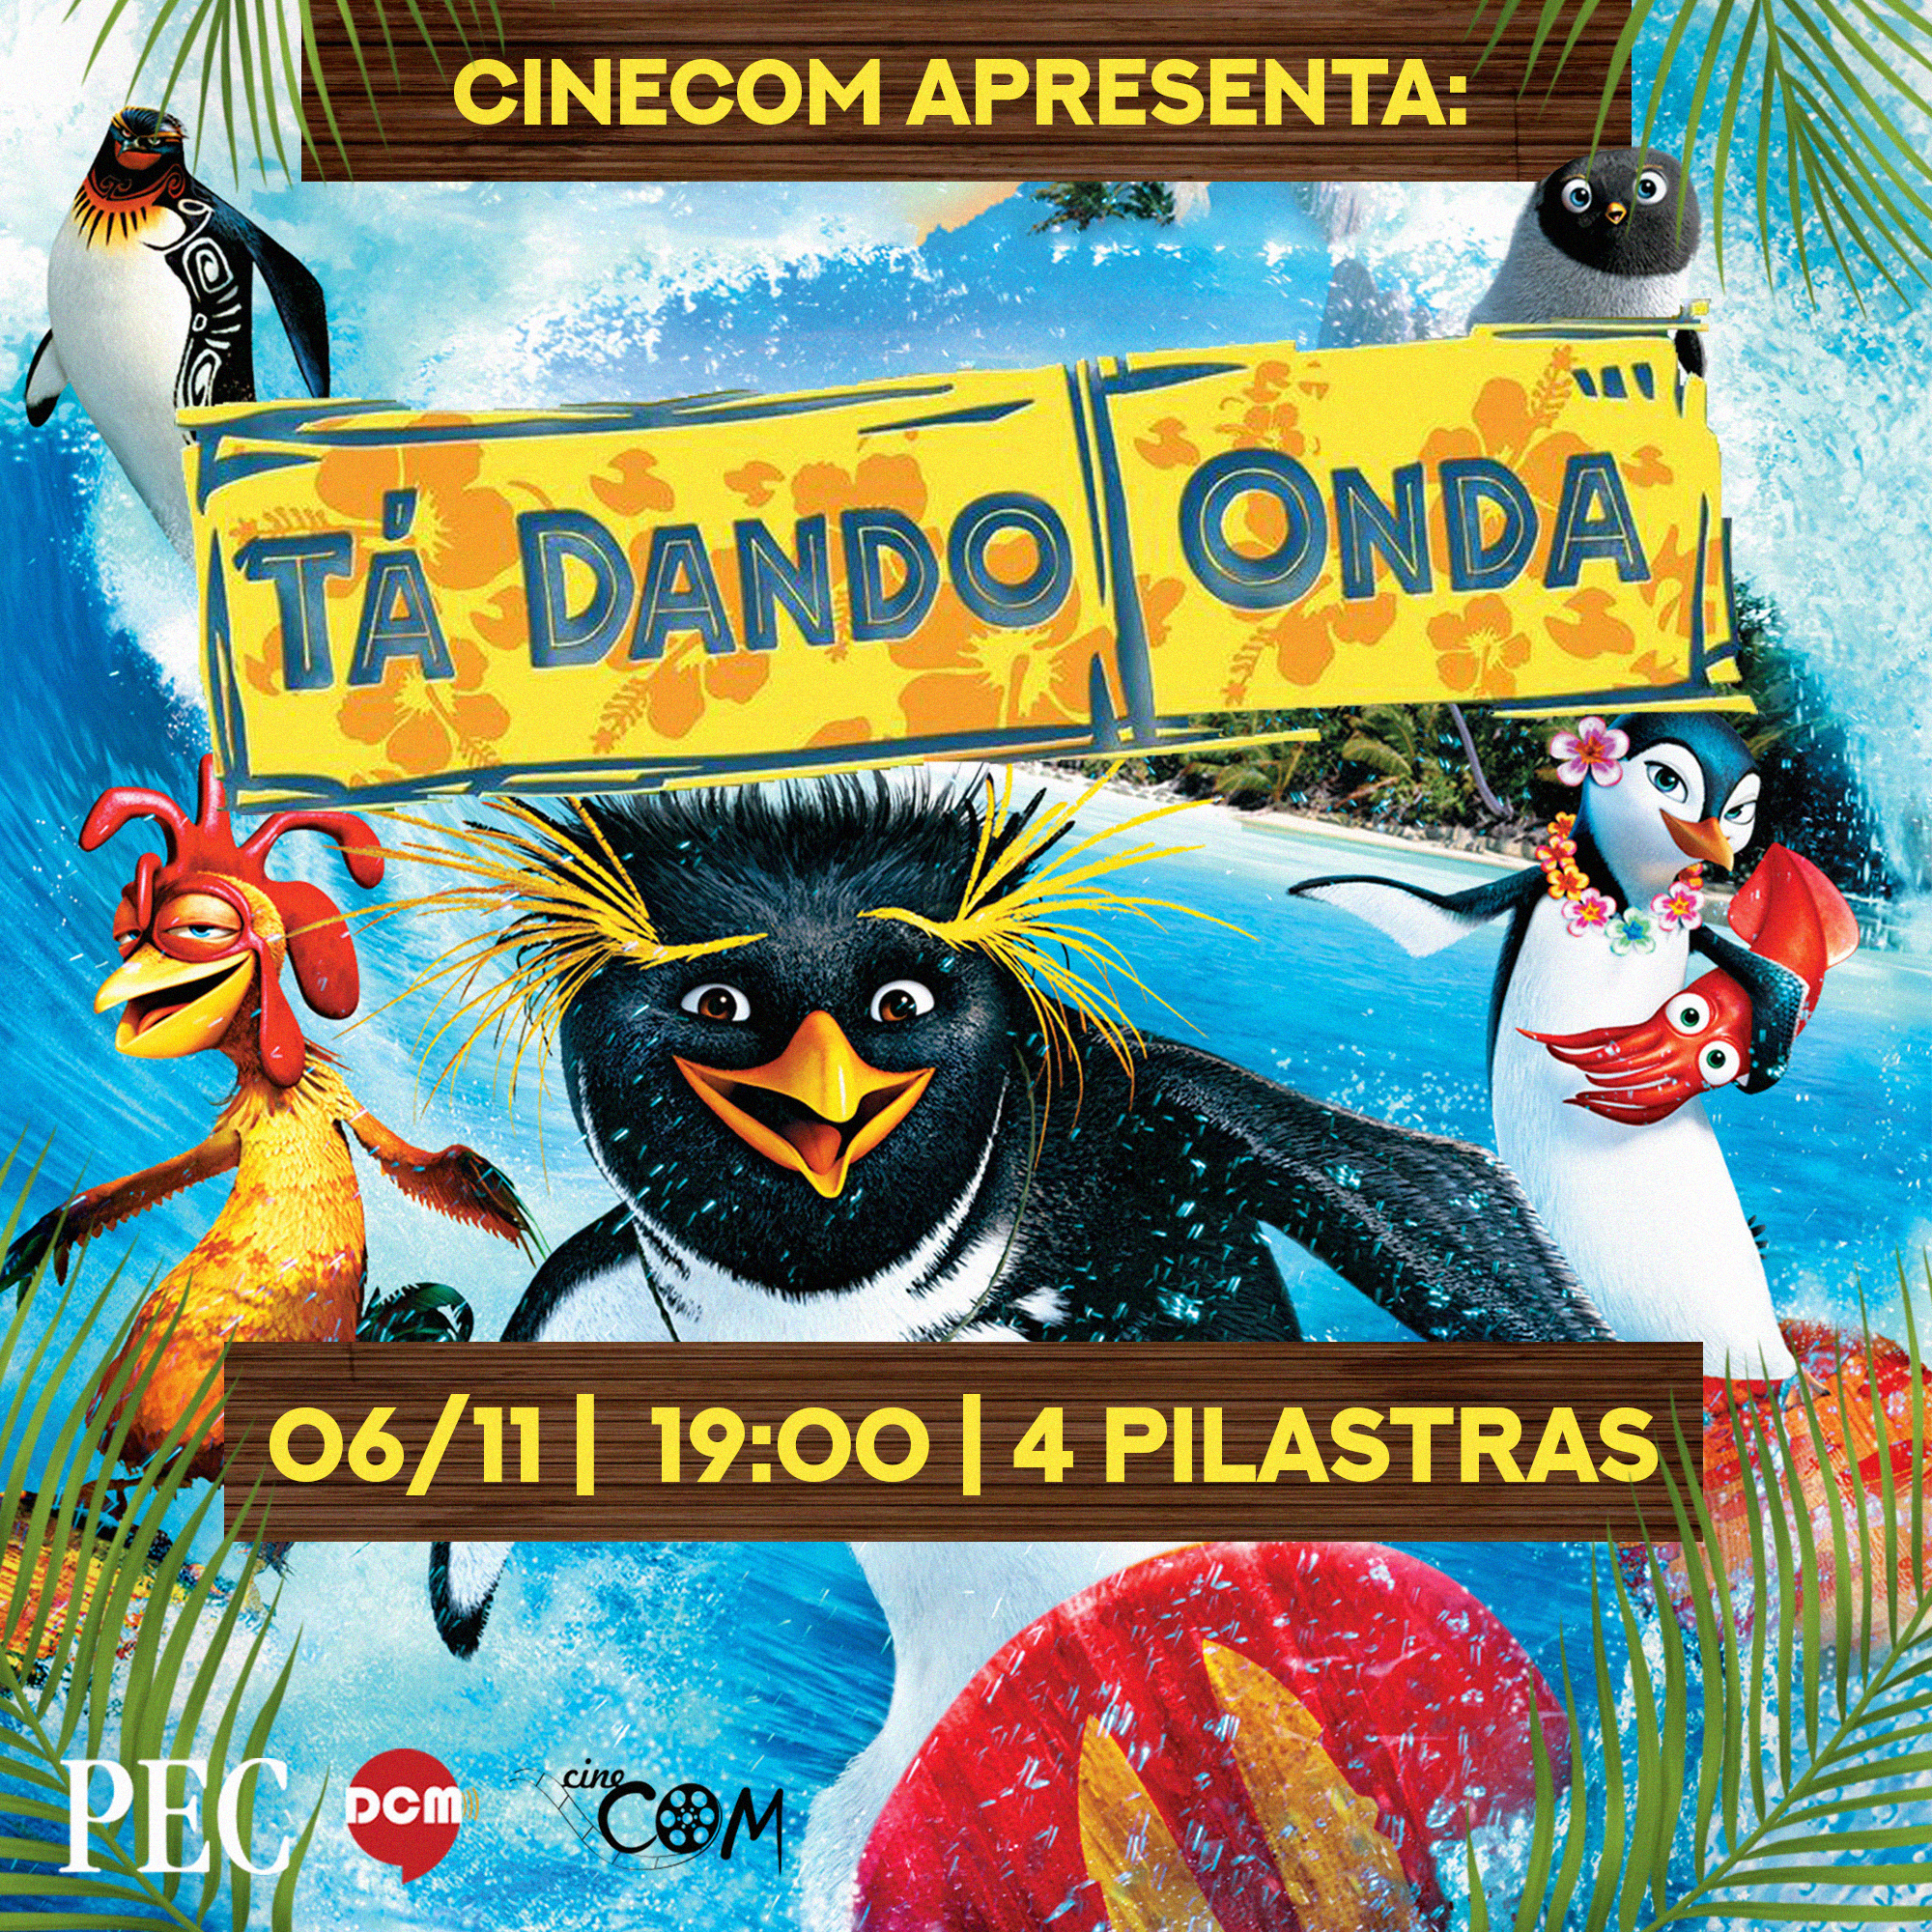 Cartaz do filme, com personagens surfando em primeiro plano e uma praia ao fundo. Abaixo, as logos da PEC, DCM e Cinecom. 